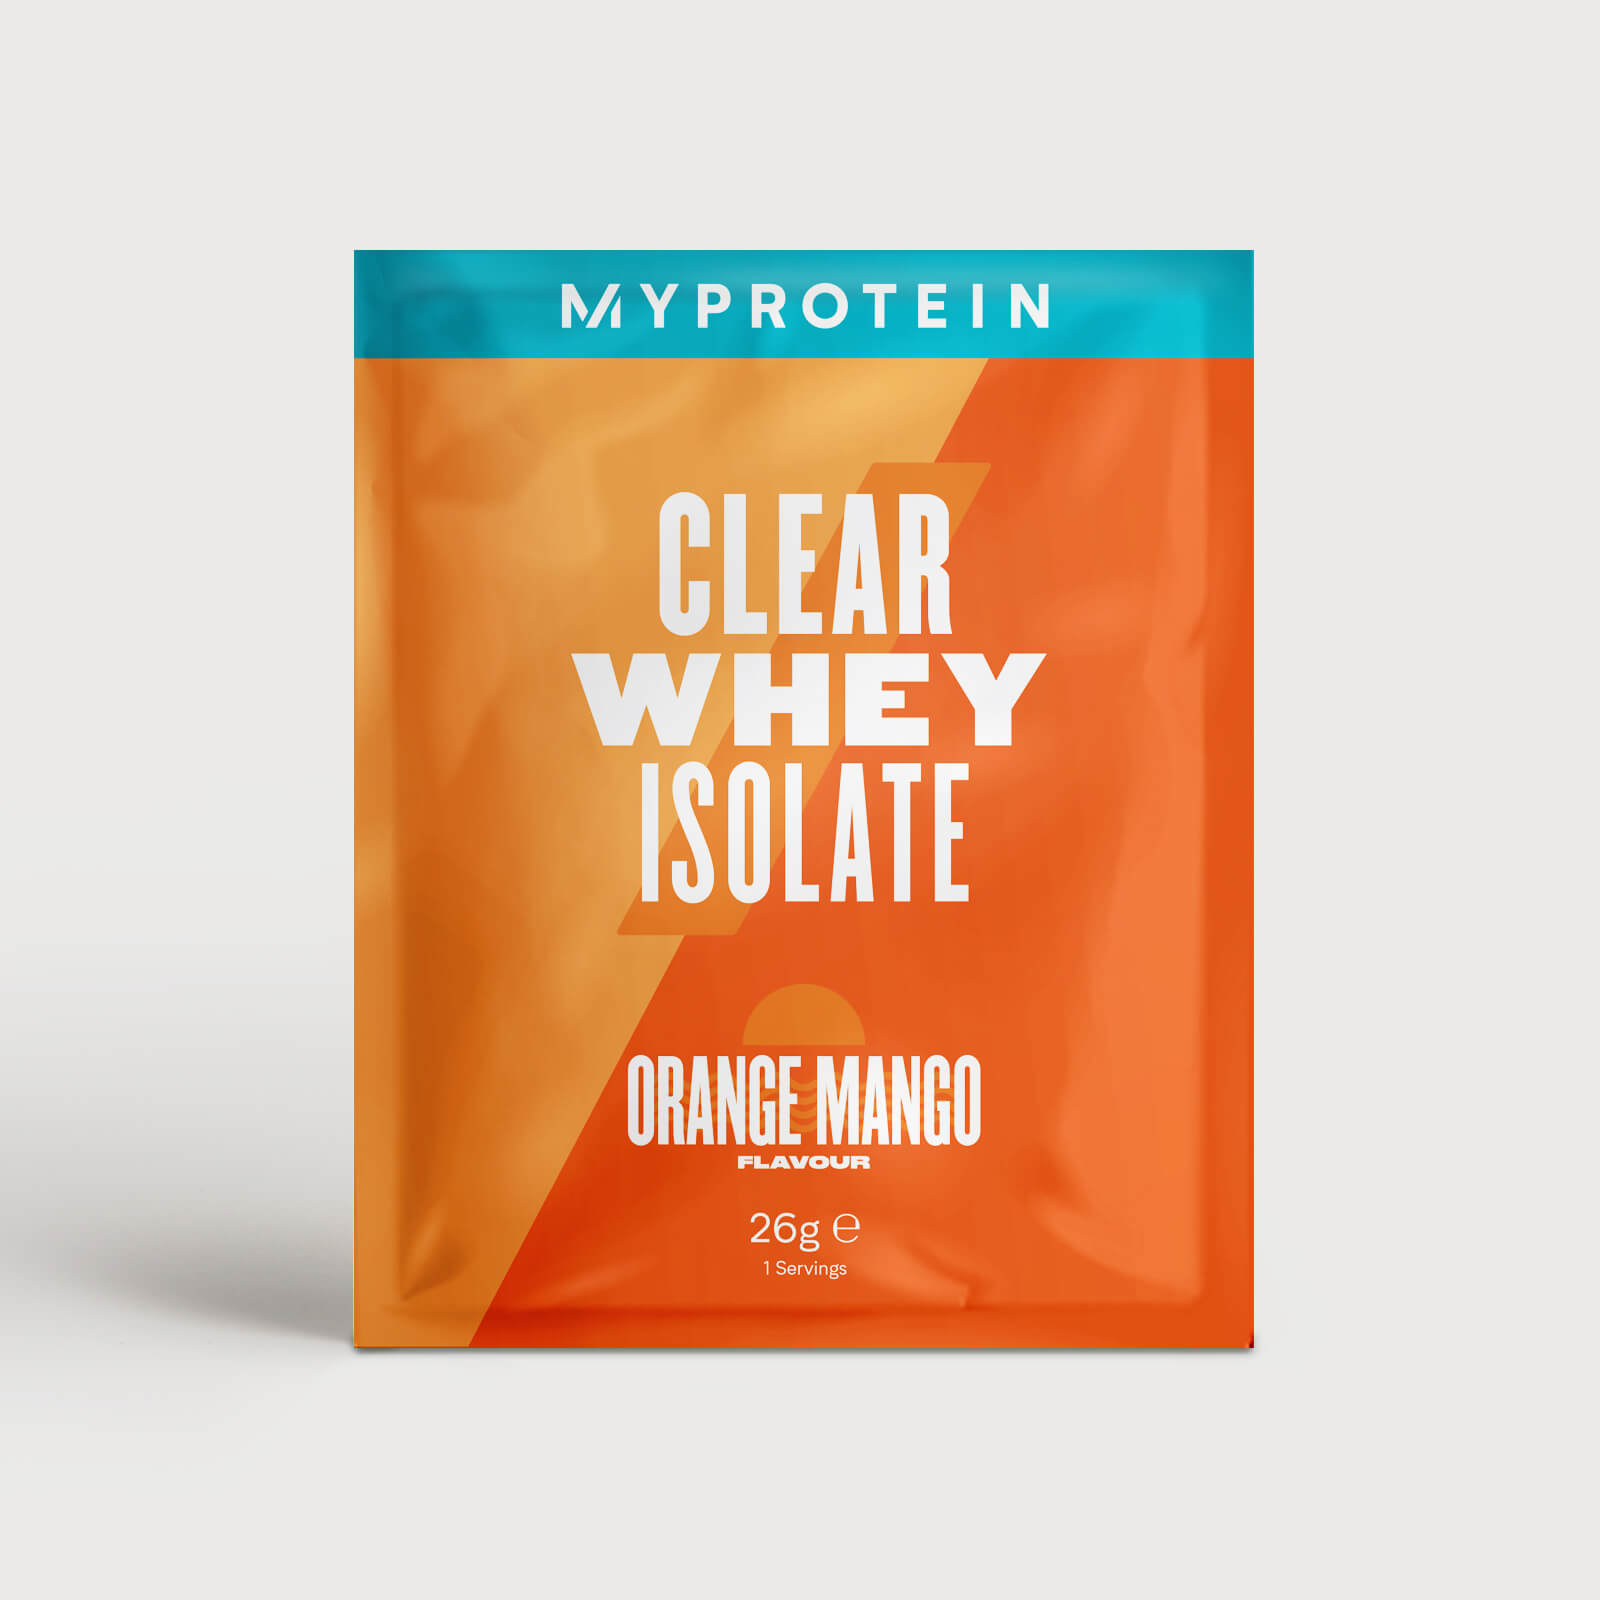 Clear Whey Isolate (échantillon) - 1servings - Orange Mangue